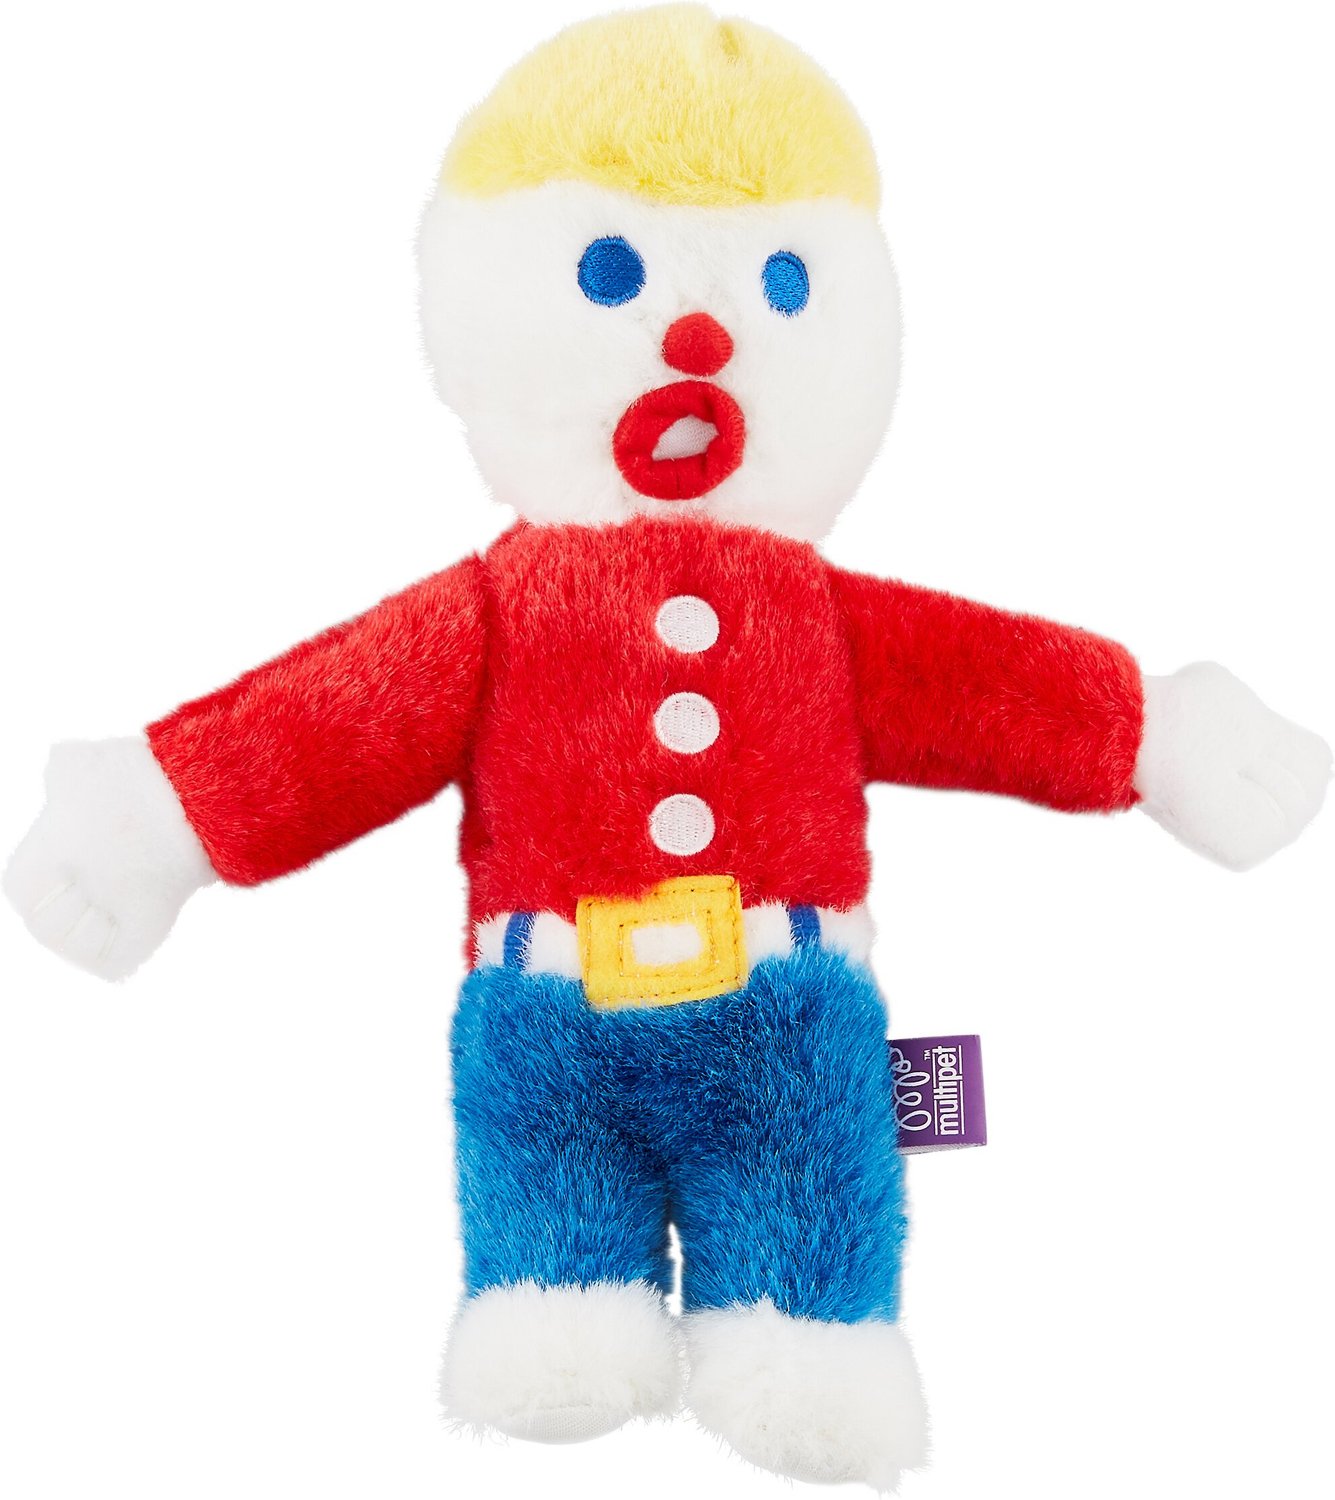 mr bill stuffed toy